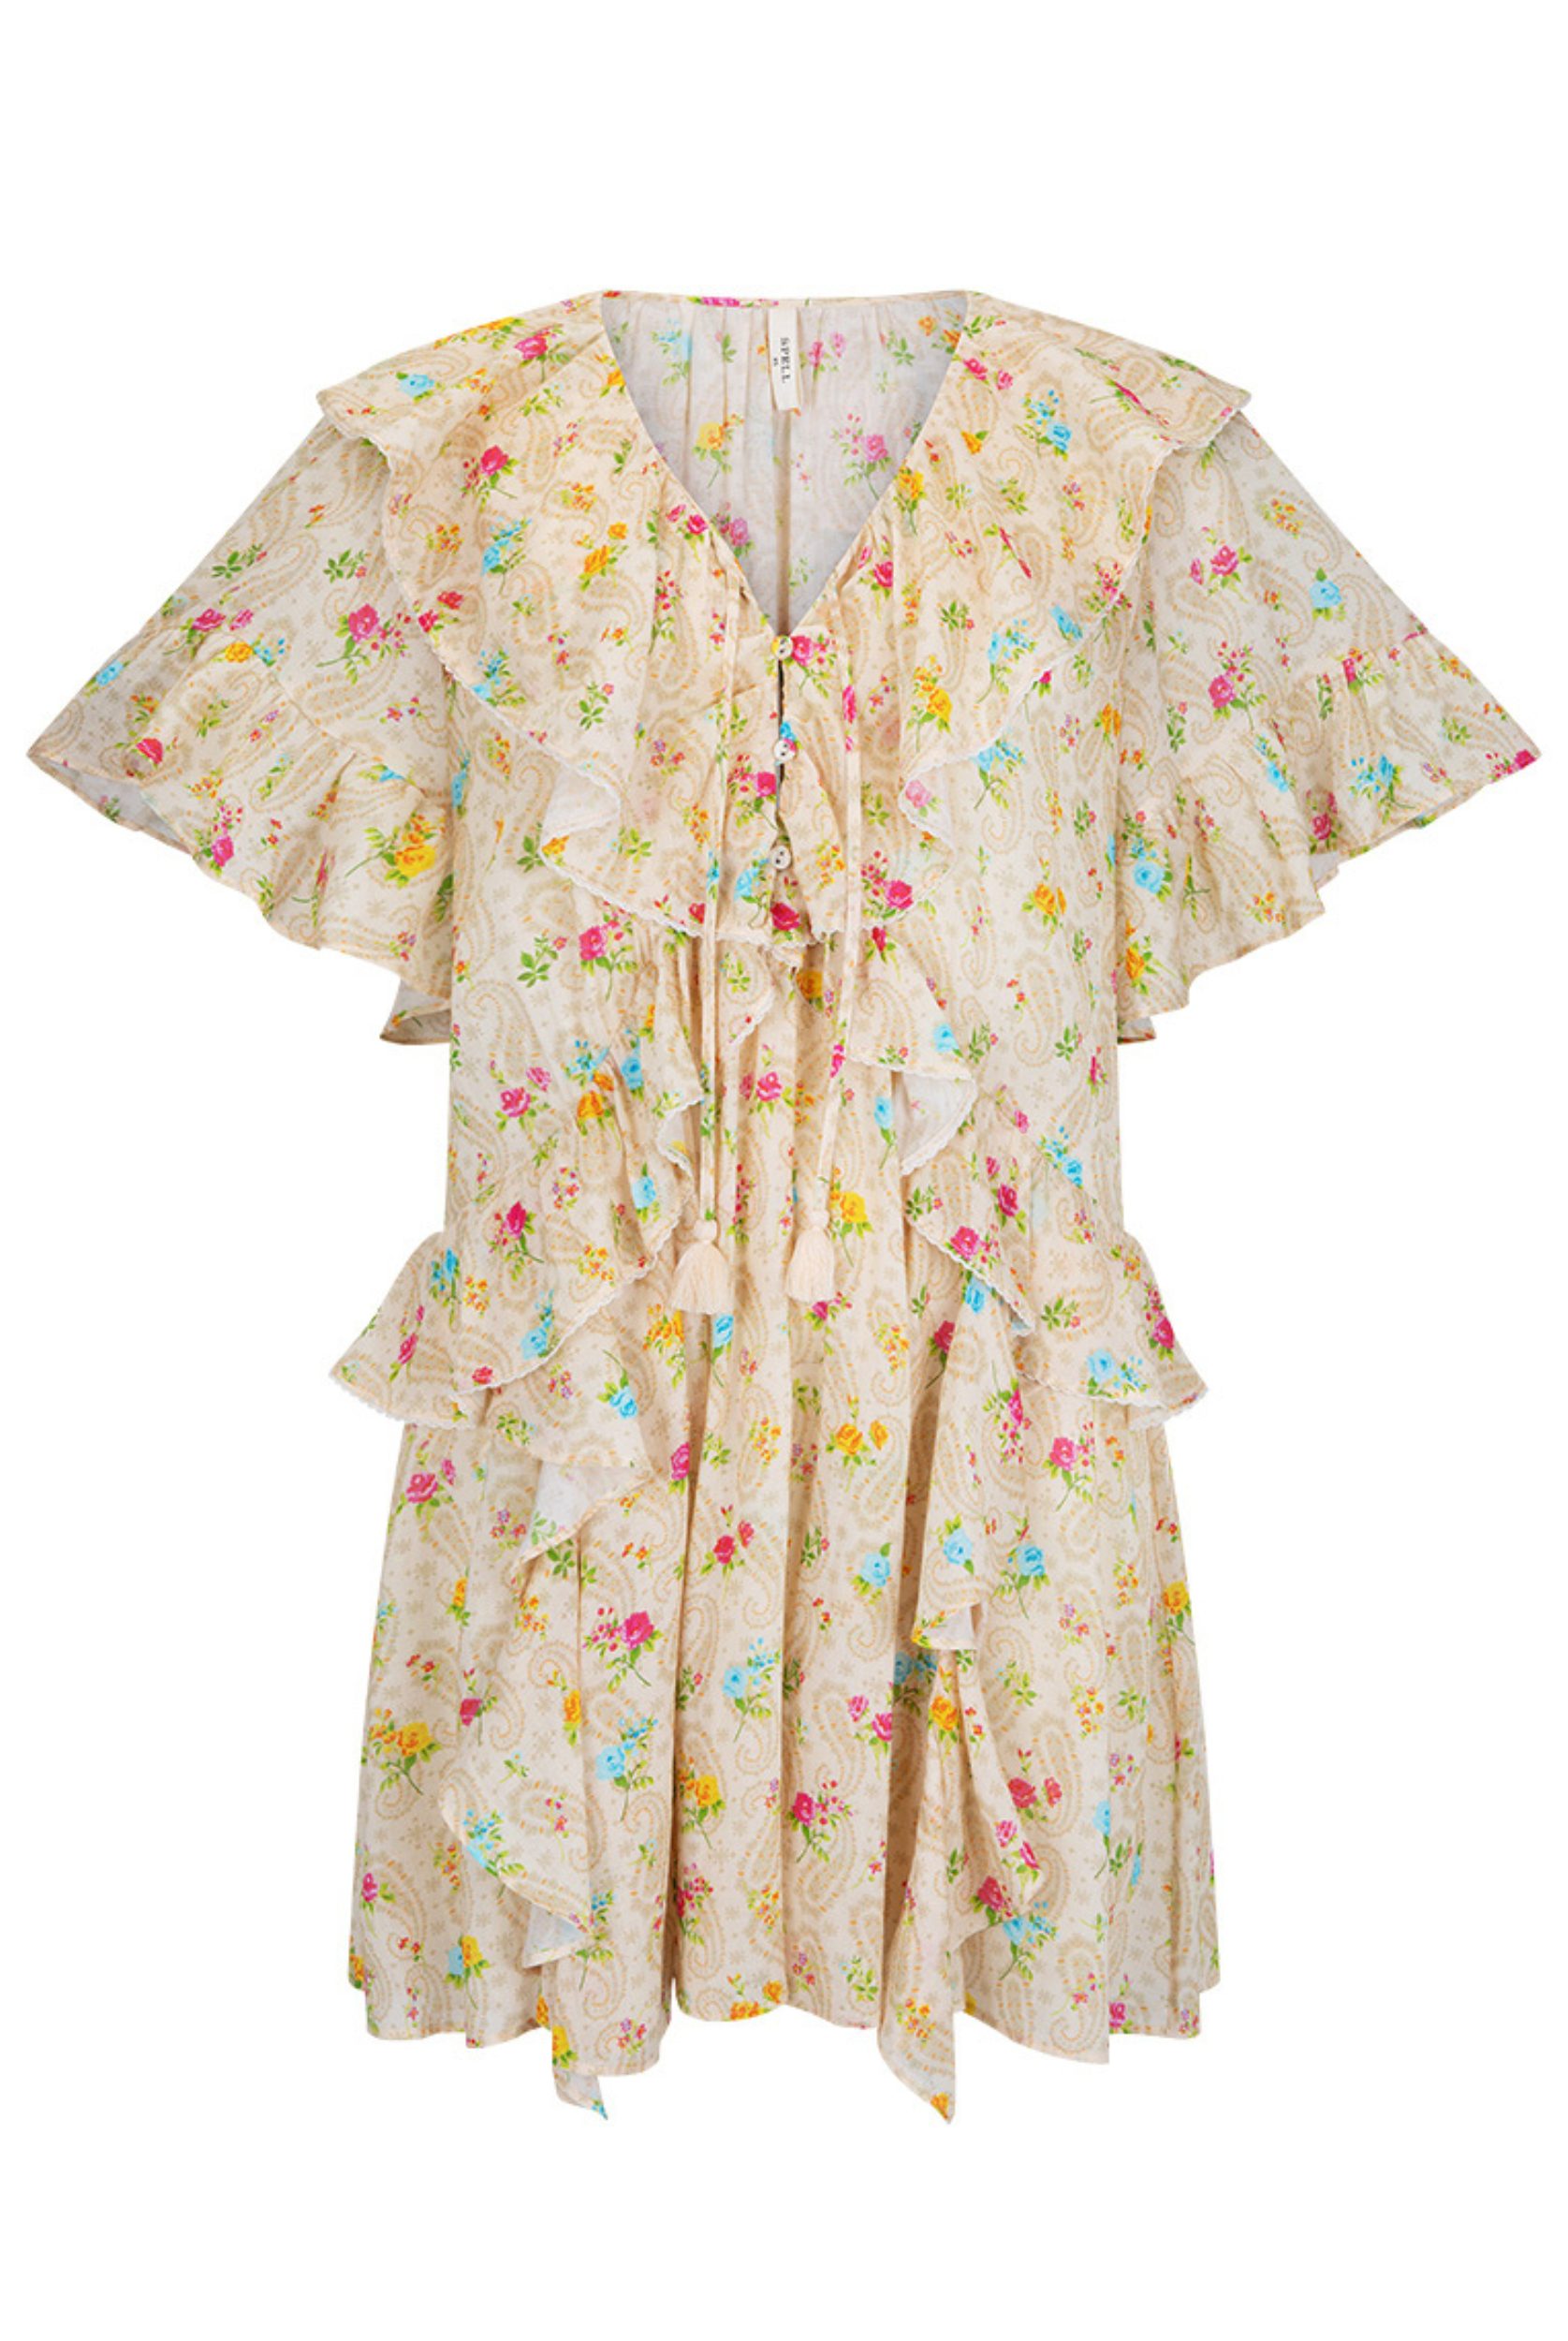 Fleur Flutter Sleeve Mini Dress by Spell in Macaroon